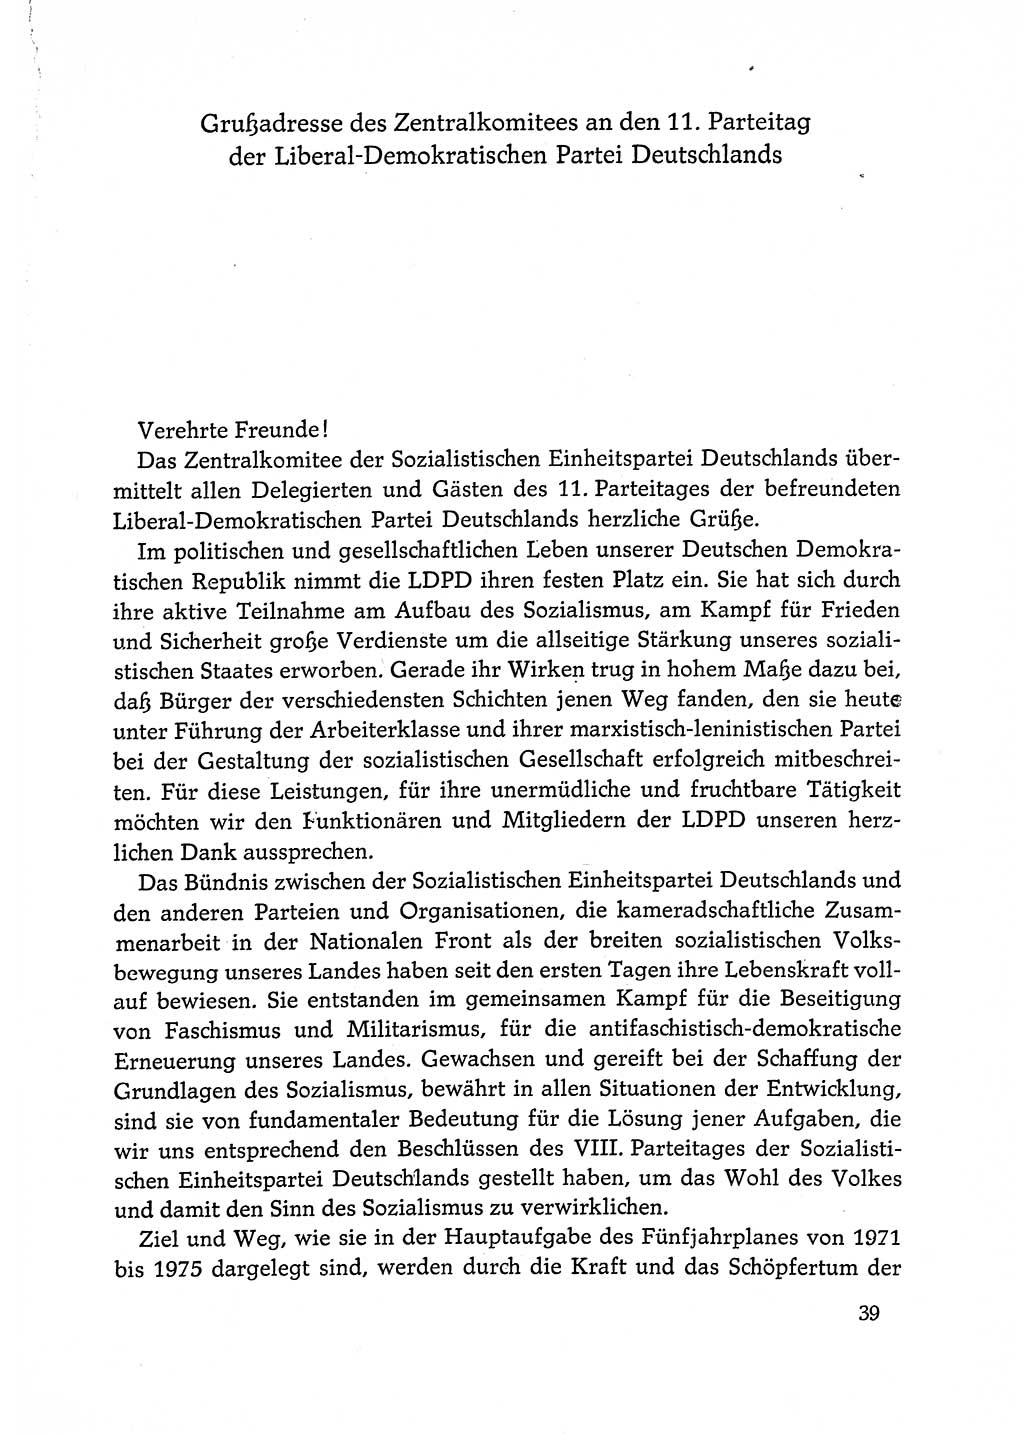 Dokumente der Sozialistischen Einheitspartei Deutschlands (SED) [Deutsche Demokratische Republik (DDR)] 1972-1973, Seite 39 (Dok. SED DDR 1972-1973, S. 39)